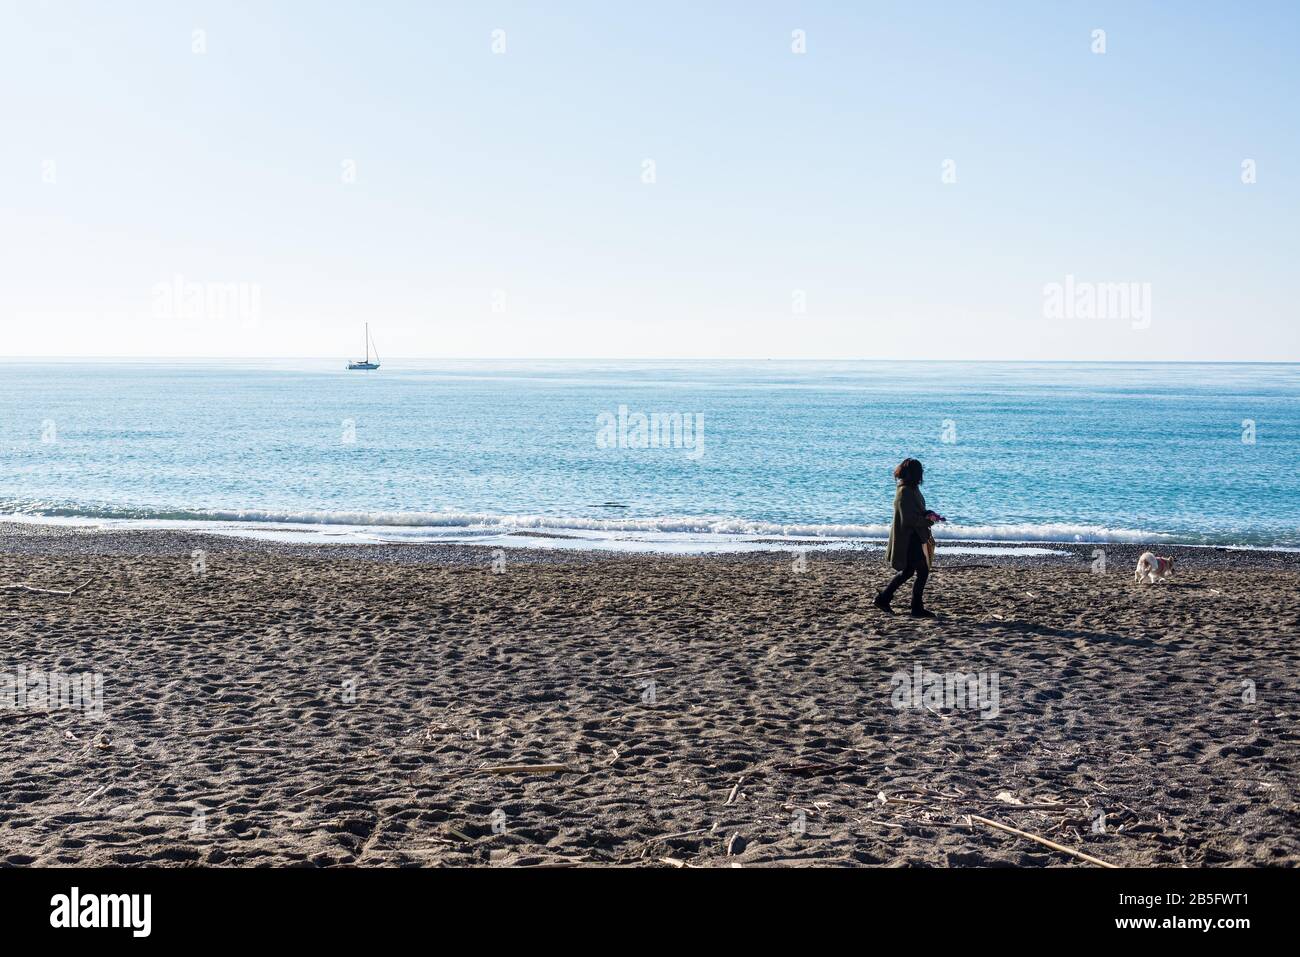 Cecina, Toscana, Italia - 2020 de enero: Invierno escena costera en Toscana con la gente que disfruta del soleado clima italiano en una playa de arena Foto de stock